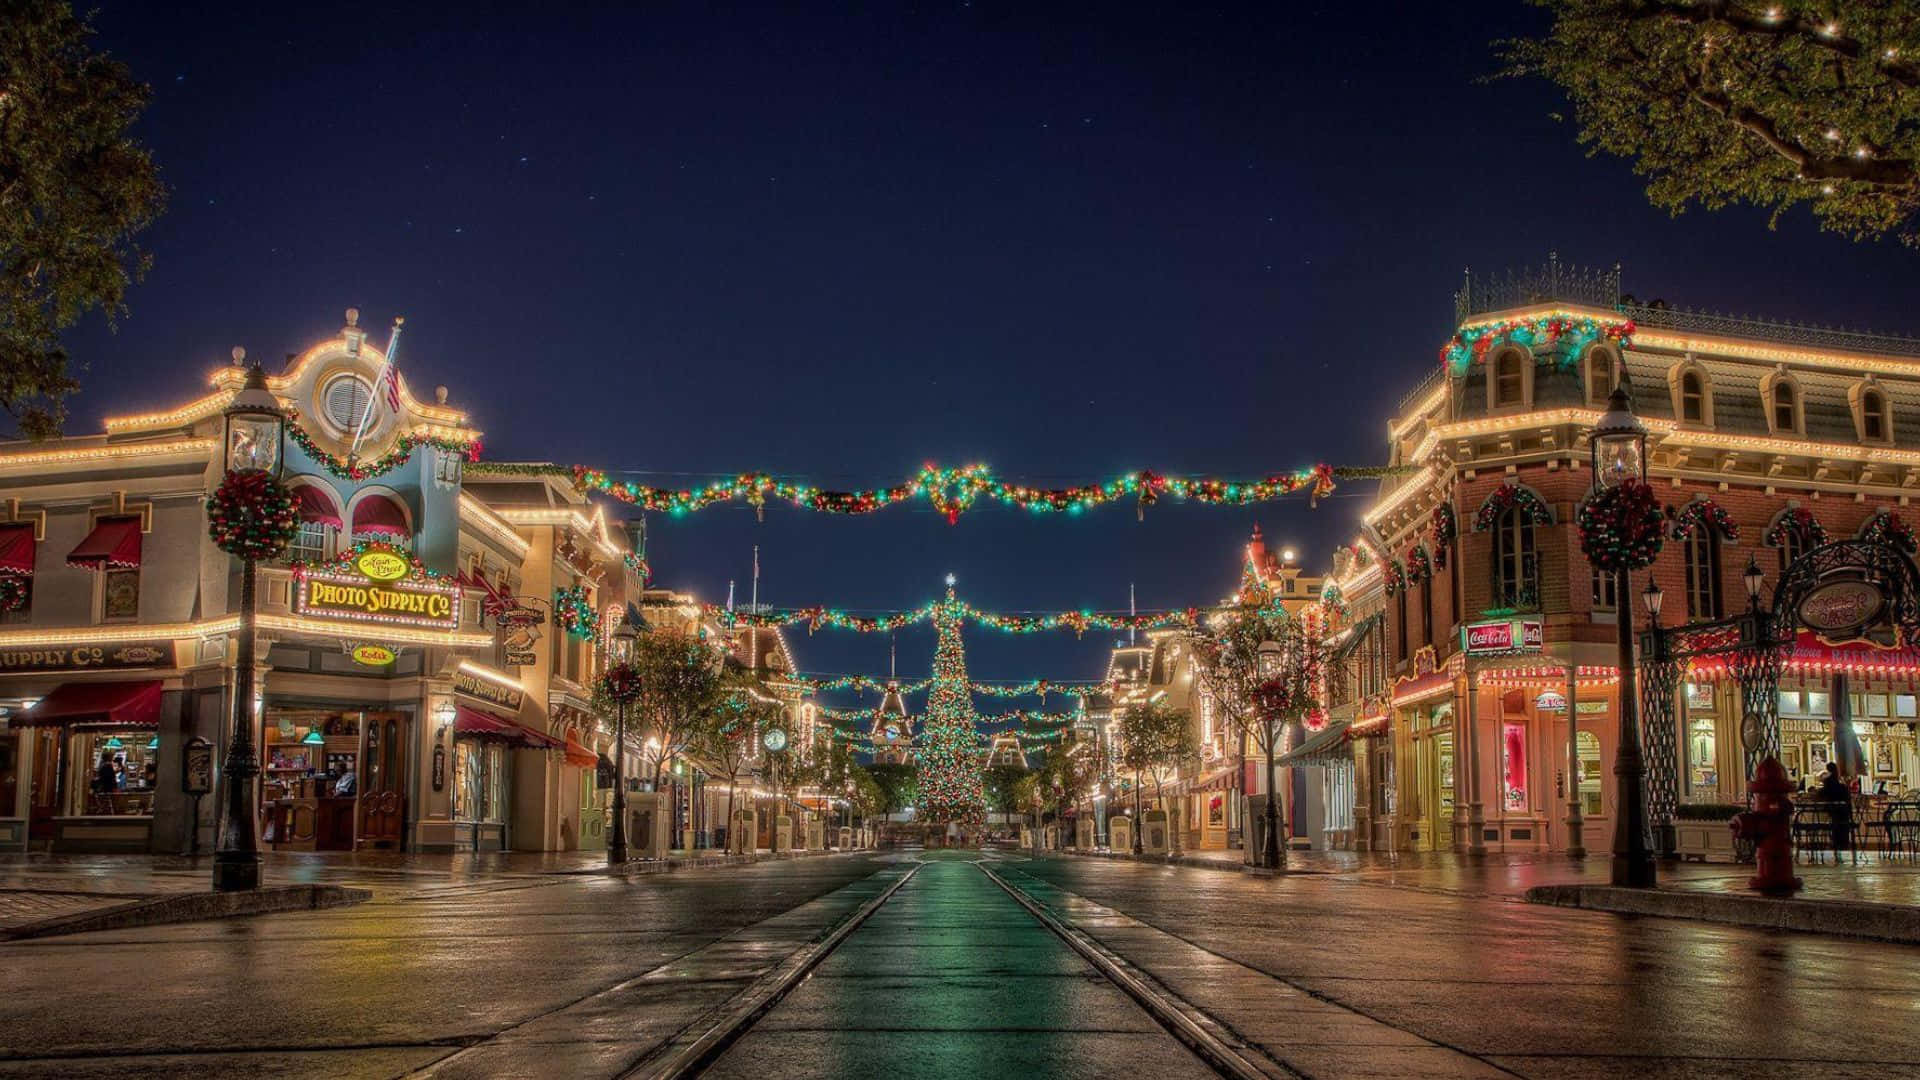 Disneylandde Noche